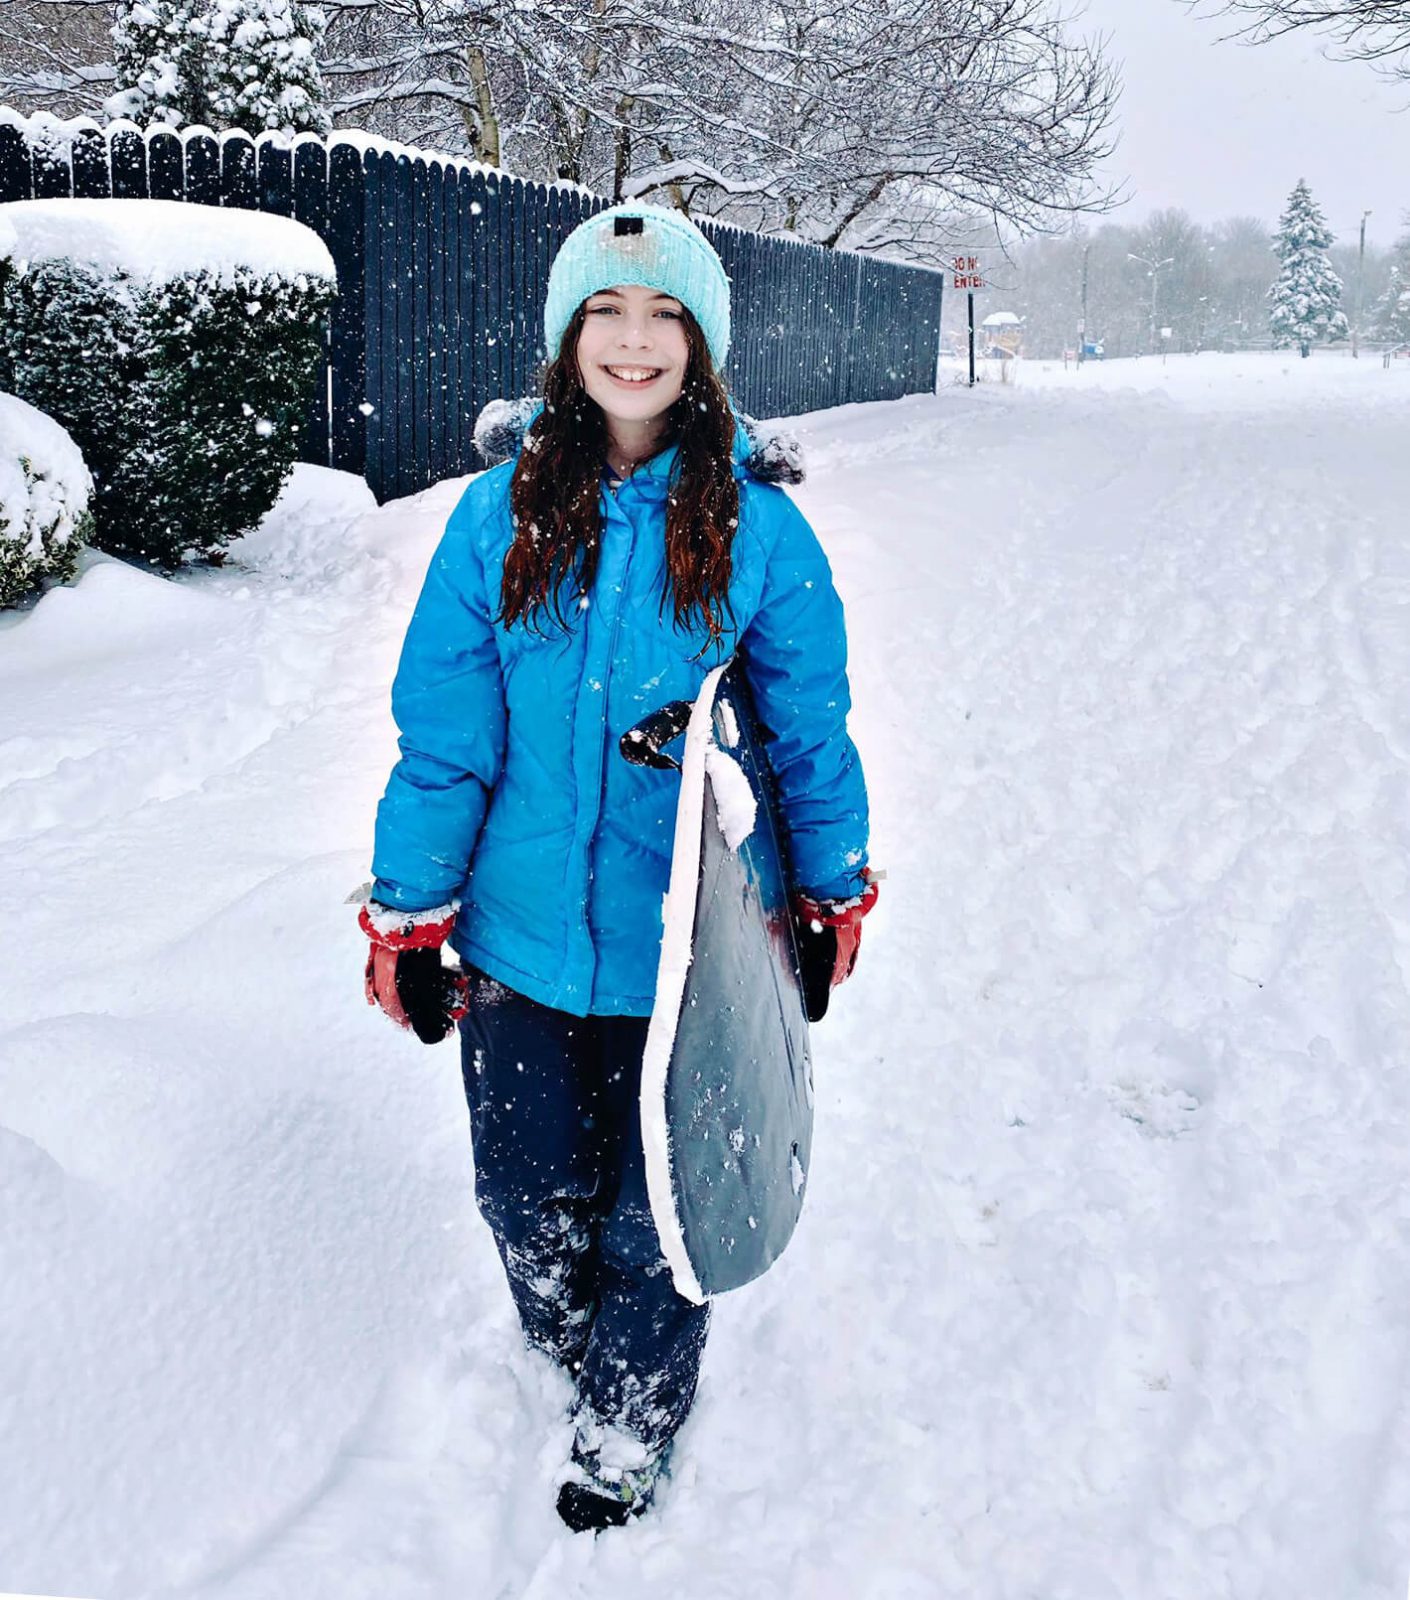 Chica joven y sonriente, bien abrigada y portando tabla, en vecindario cubierto de nieve